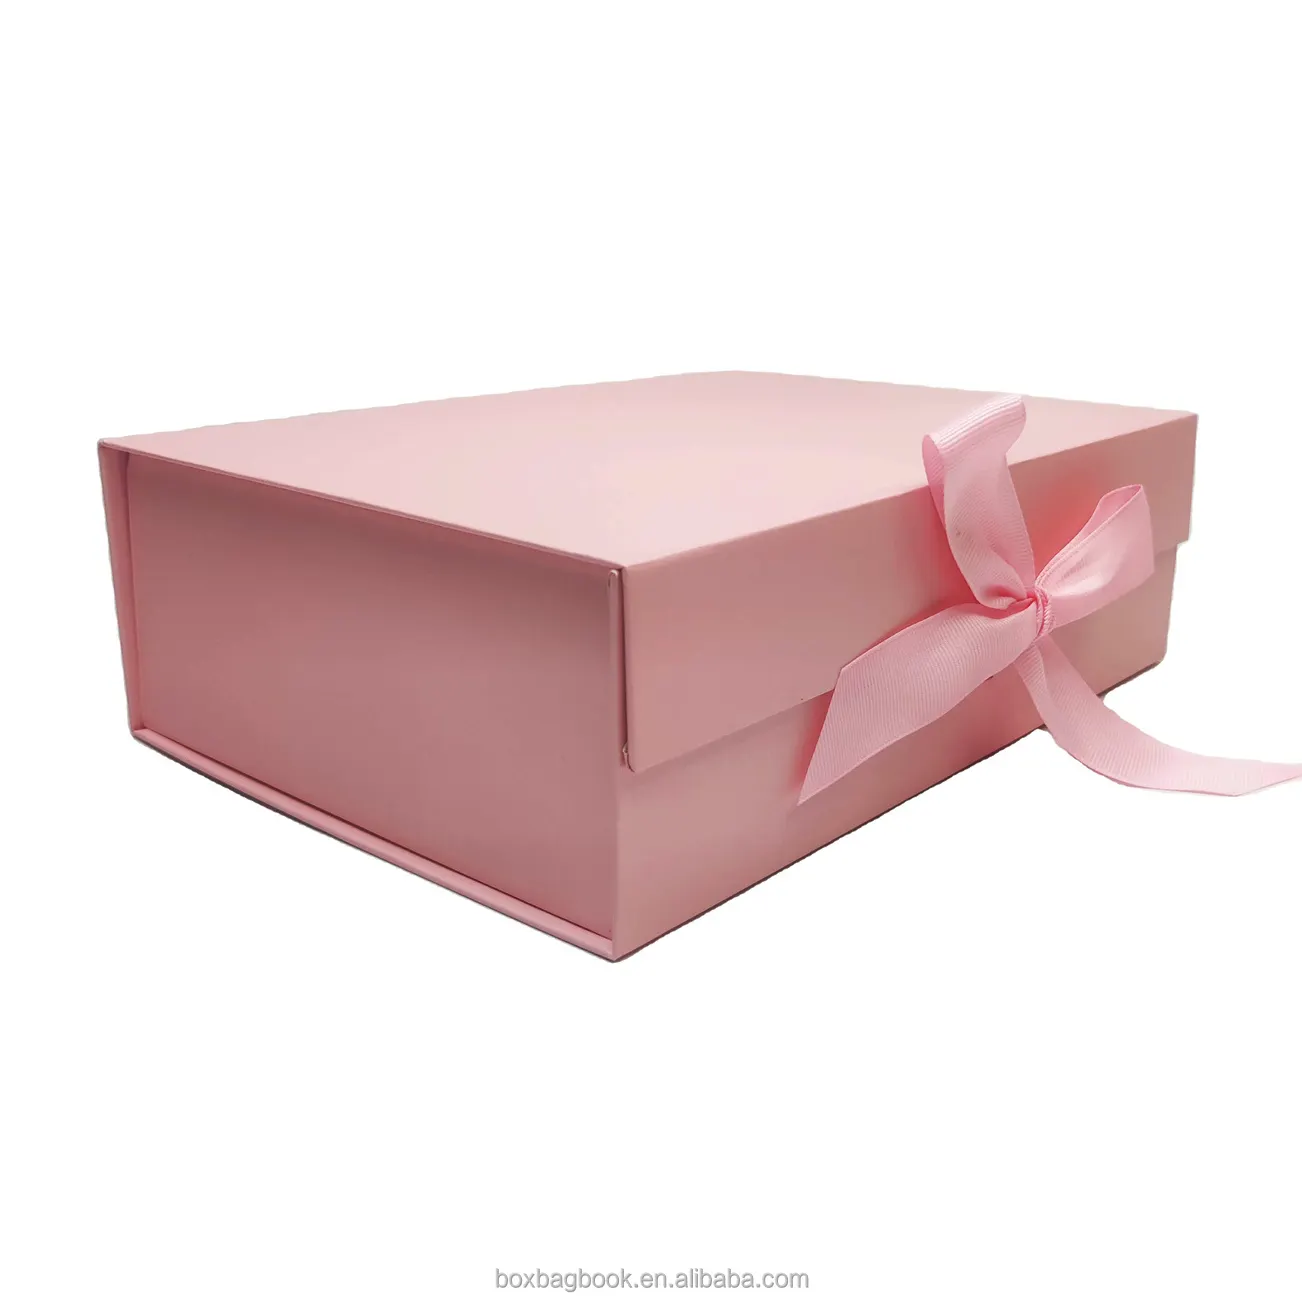 Складная упаковочная бумажная коробка для чайного пакета по разумной цене, складная коробка из крафт-бумаги, складные коробки для хранения, набор из 3 упаковок для кофе